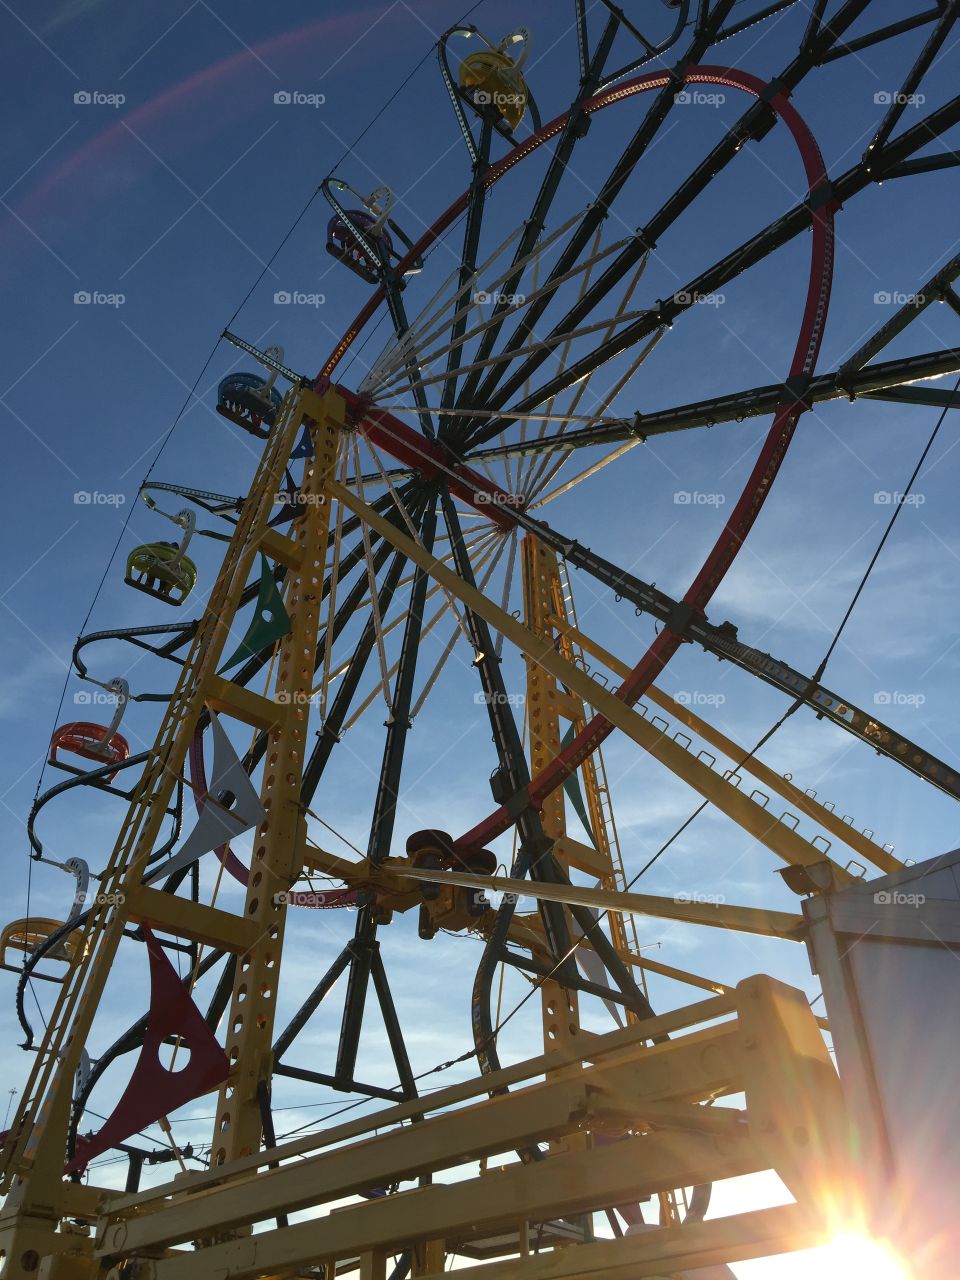 Ferris wheel at dusk. Ferris wheel at the fair